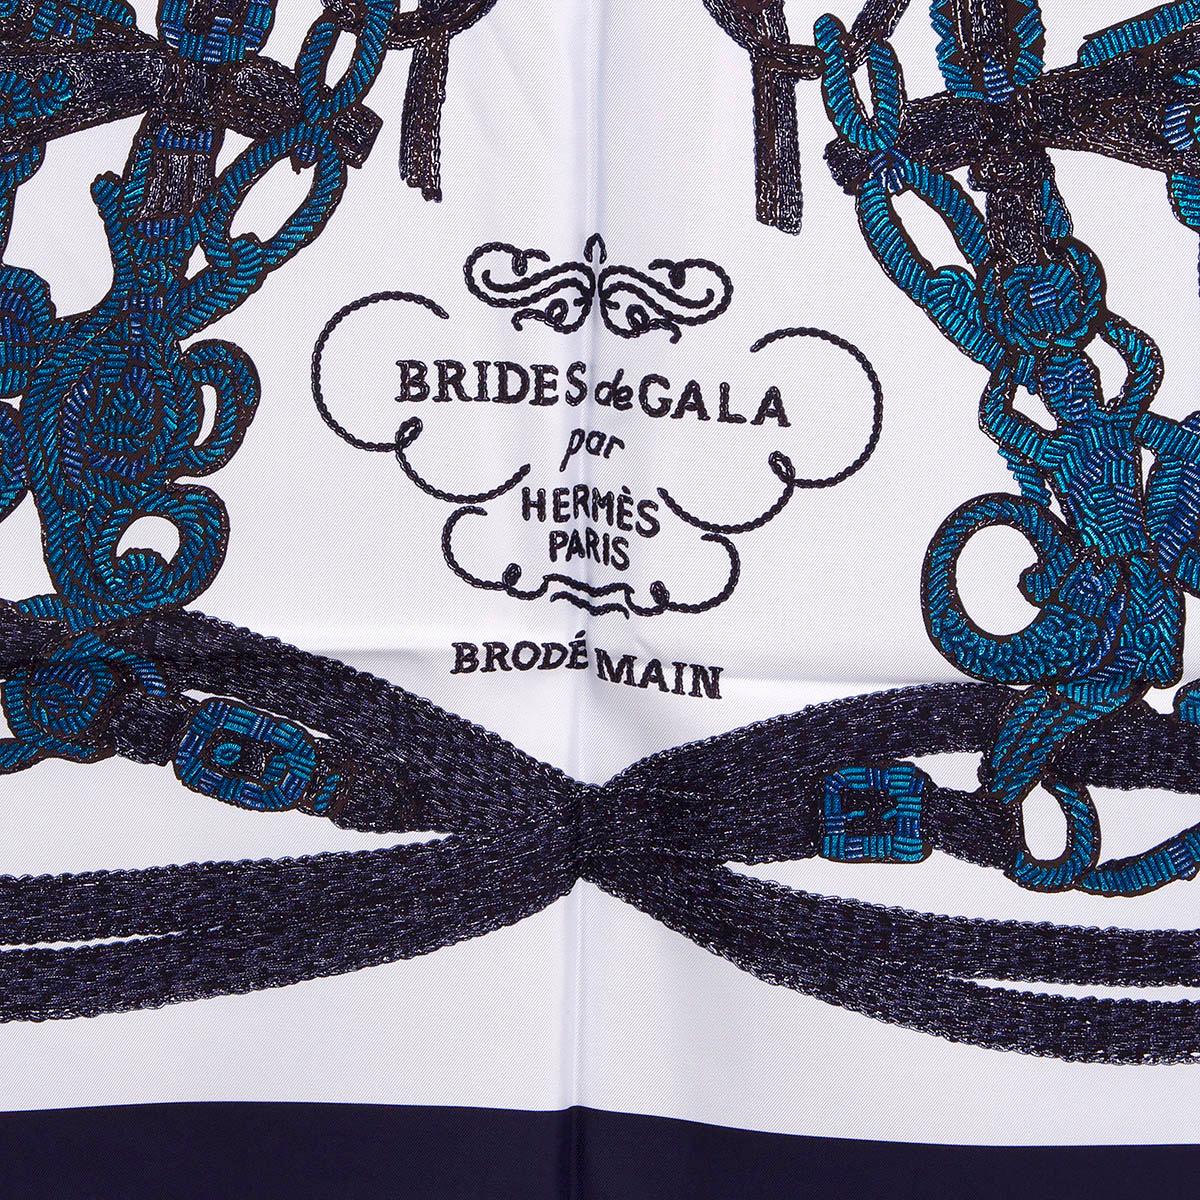 100% authentischer Hermès 'Brides de Gala Brode 90' Schal mit Stickerei-Over-Print, ursprünglich von Hugo Grygkar und neu interpretiert von Leila Menchari. Aus hellblauem Seidenköper (100%) mit marineblauer Bordüre und kobaltblauen Details. Brandneu